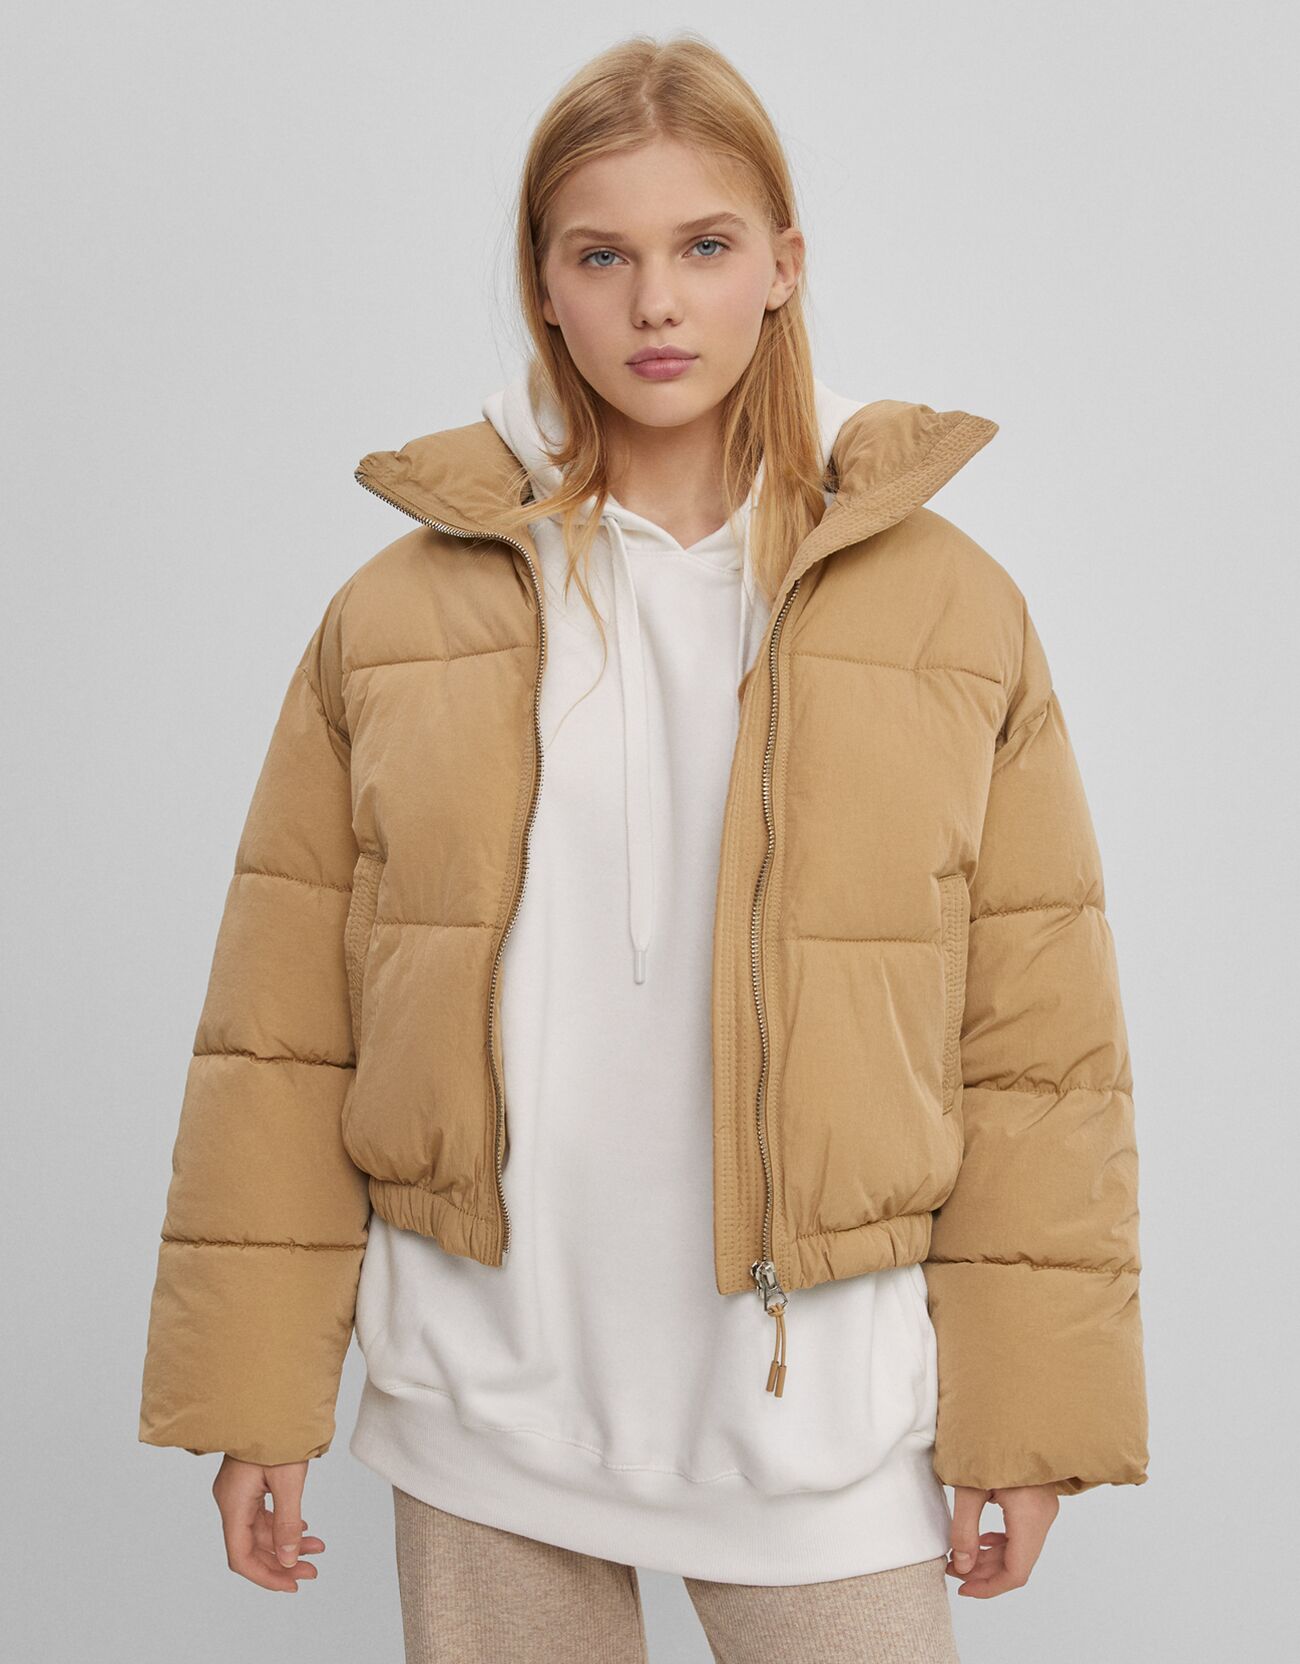 Artikel klicken und genauer betrachten! - Oversize-Sweater Color: Camel Size: S Material: Polyamid;Polyester Farbe: Camel Größe: S | im Online Shop kaufen